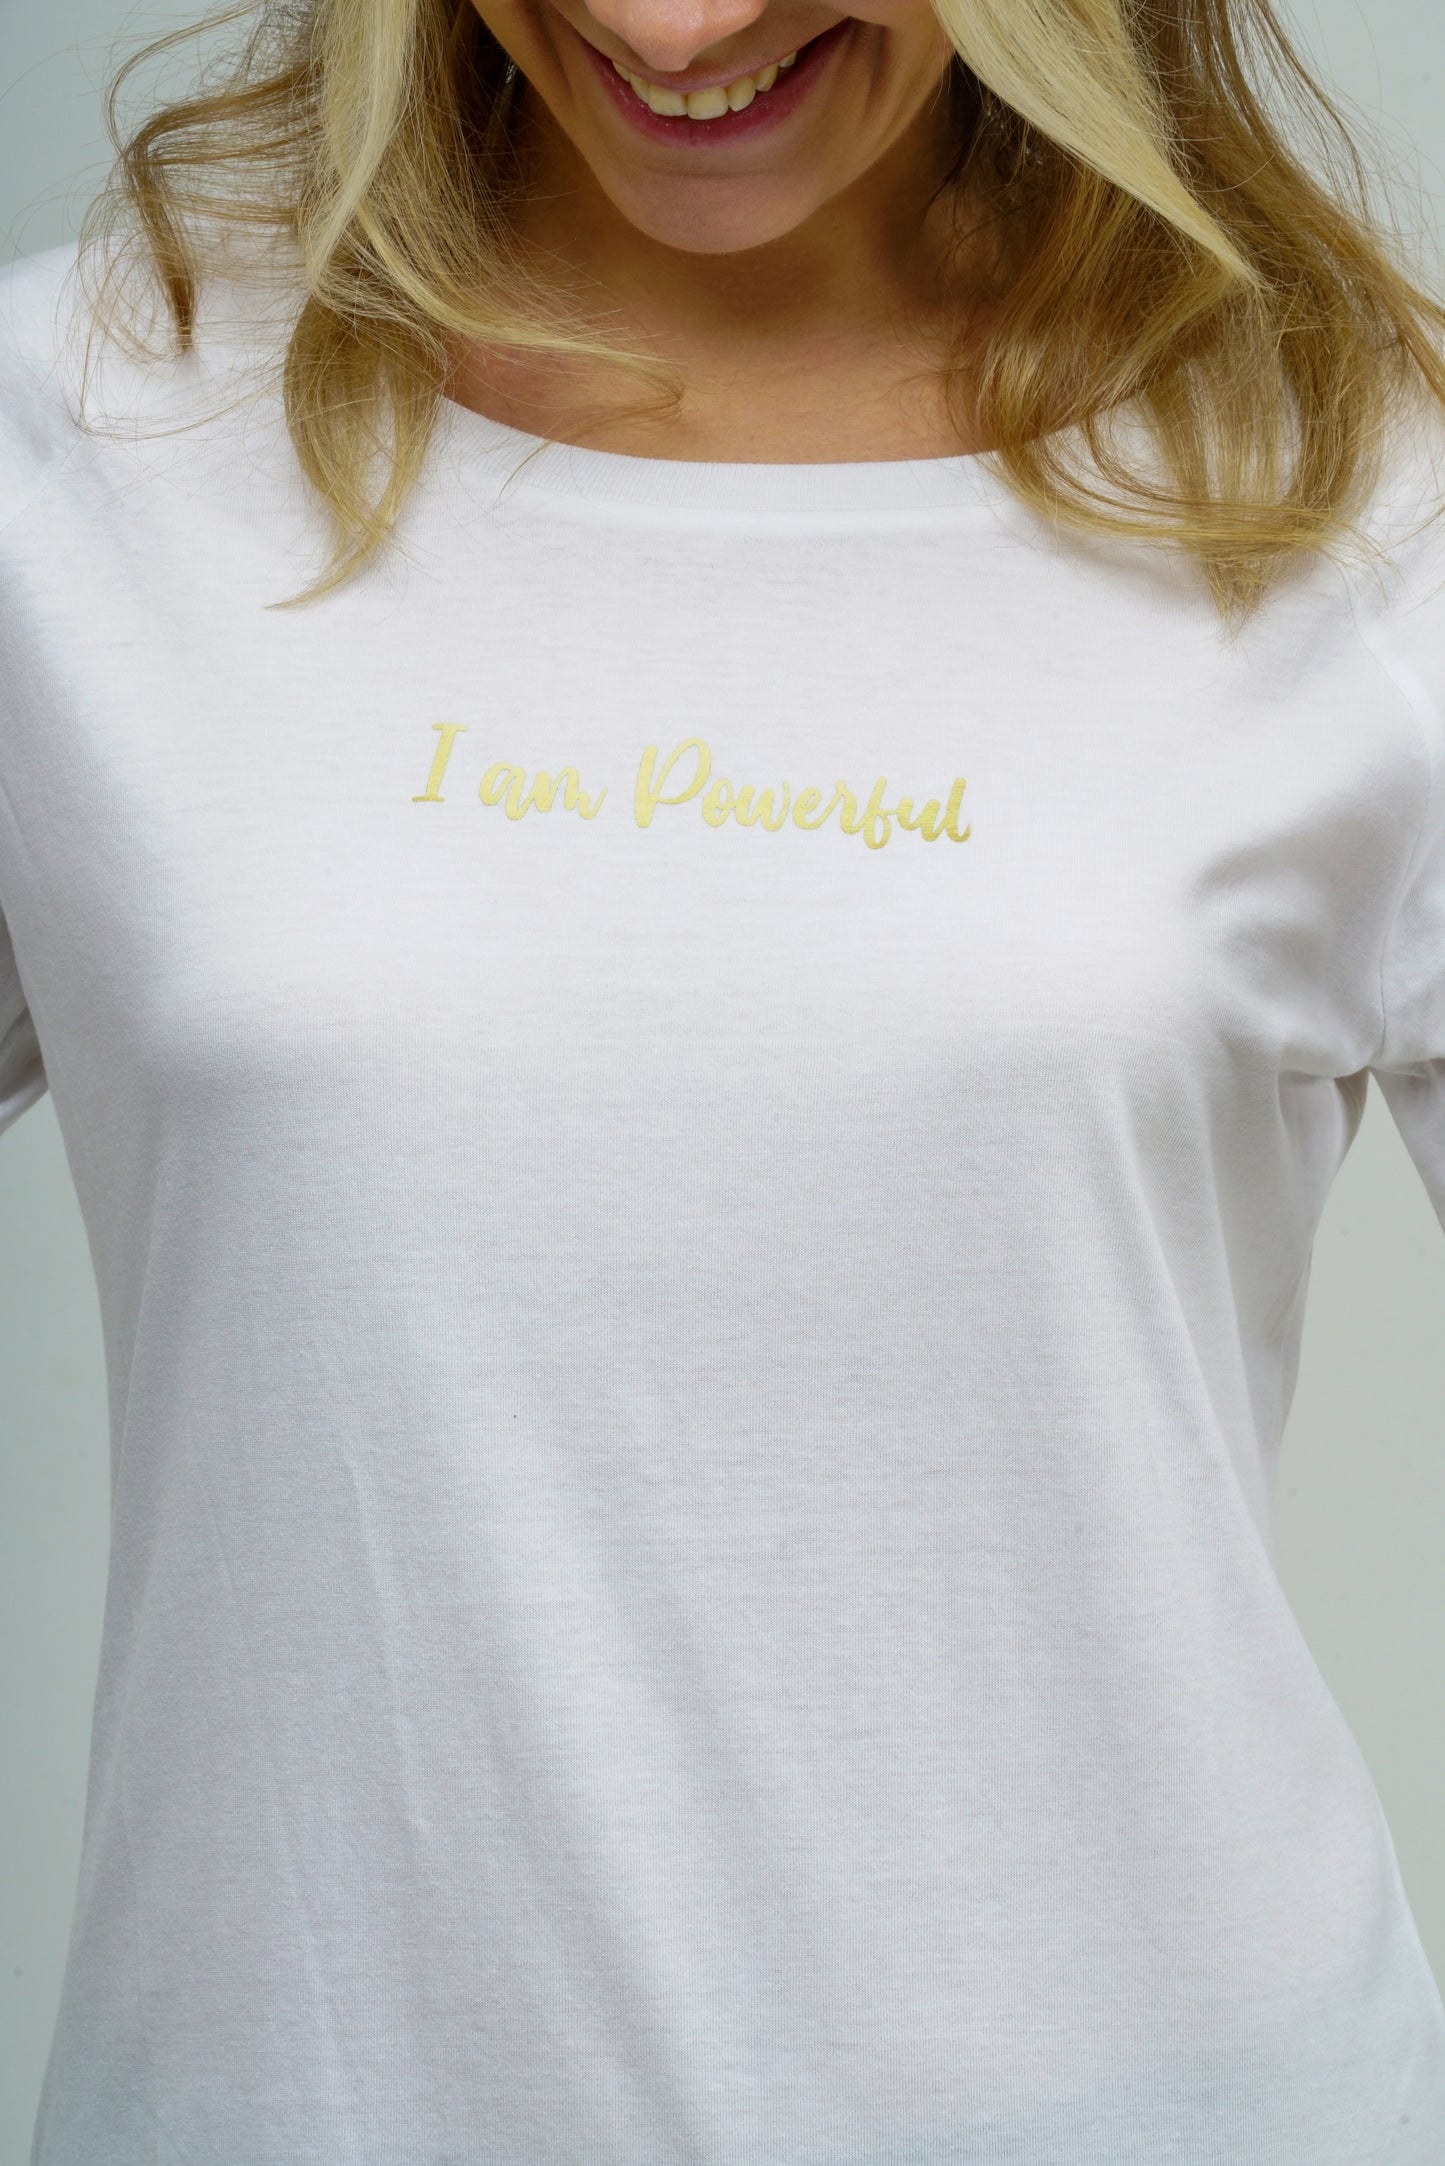 Damen organic Shirt "I am Love"